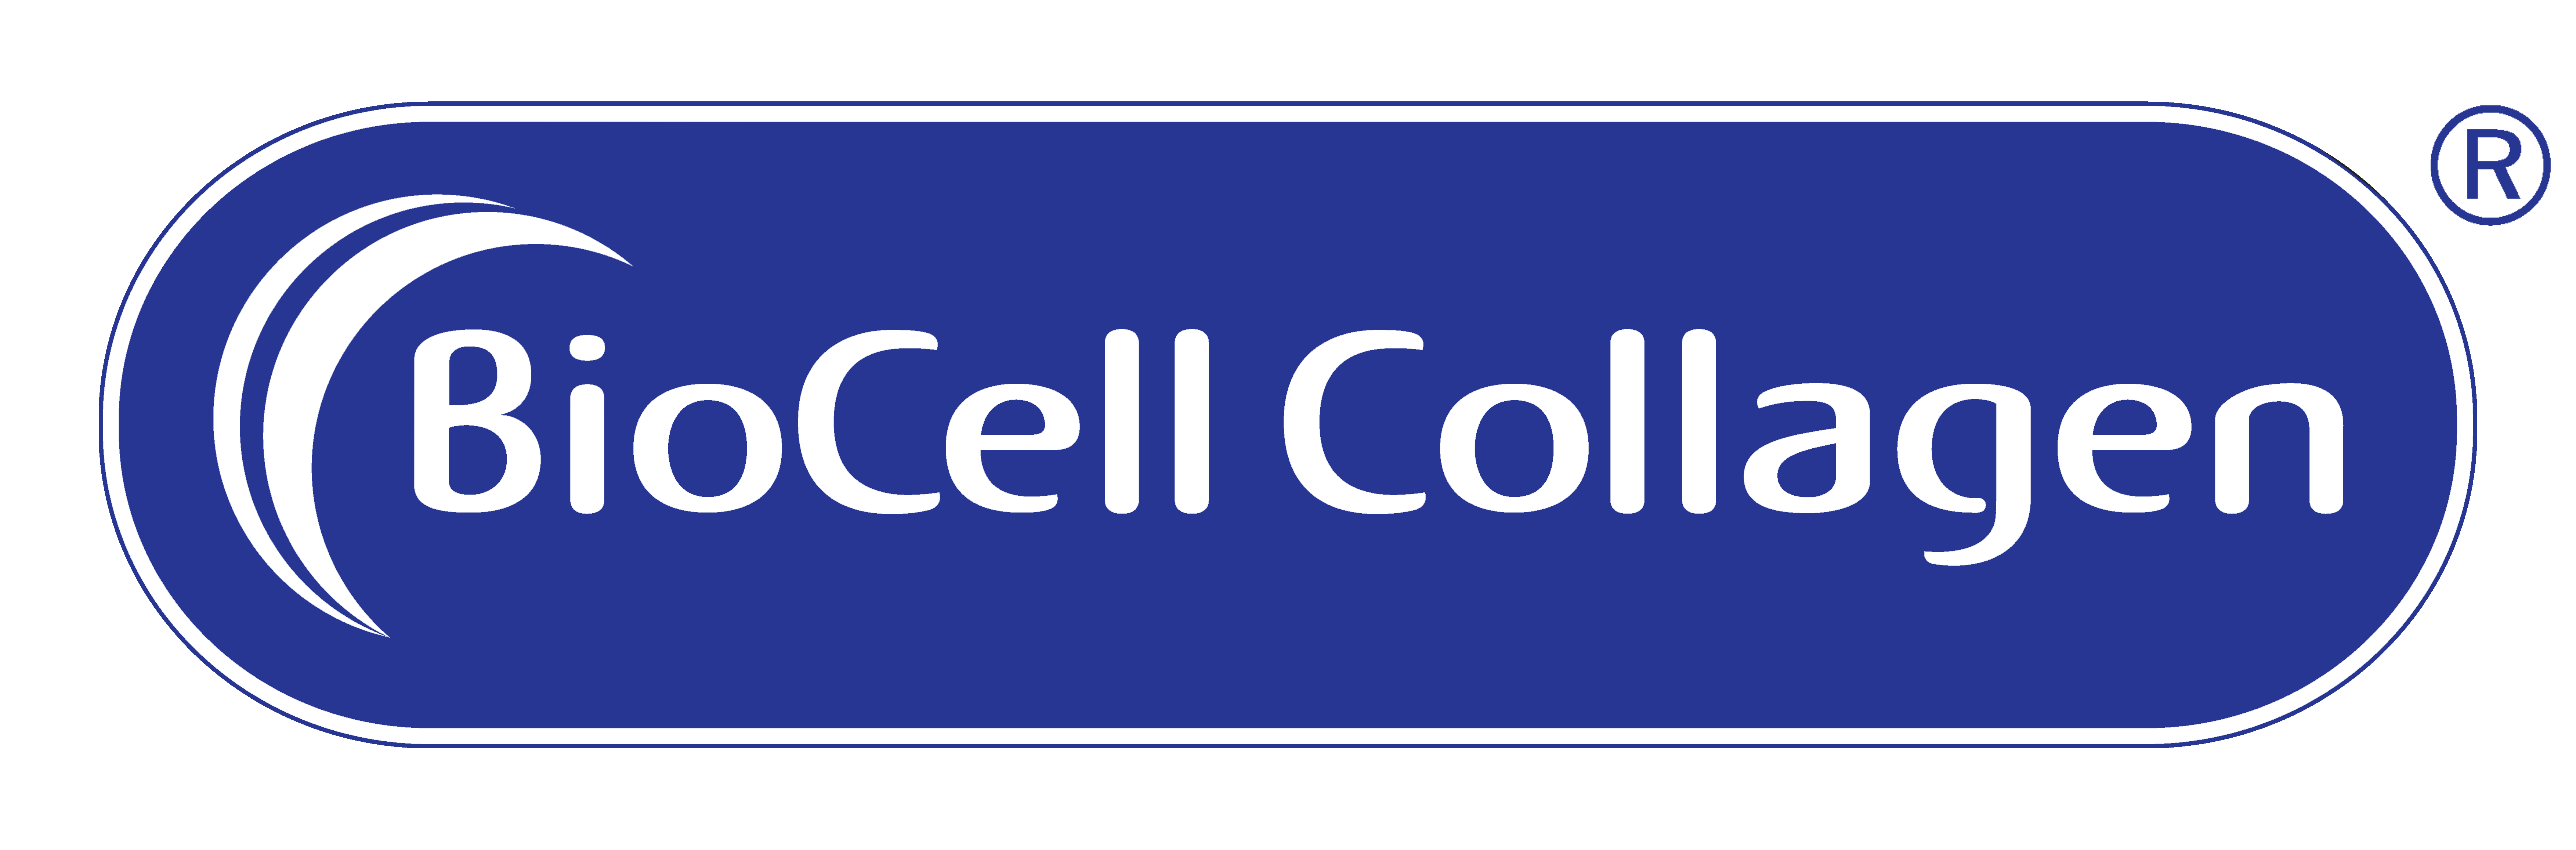 BioCell Collagen II® e sue varianti di nome e/o logo sono marchi di BioCell Technology, LLC e sono registrati negli Stati Uniti e in altre giurisdizioni.